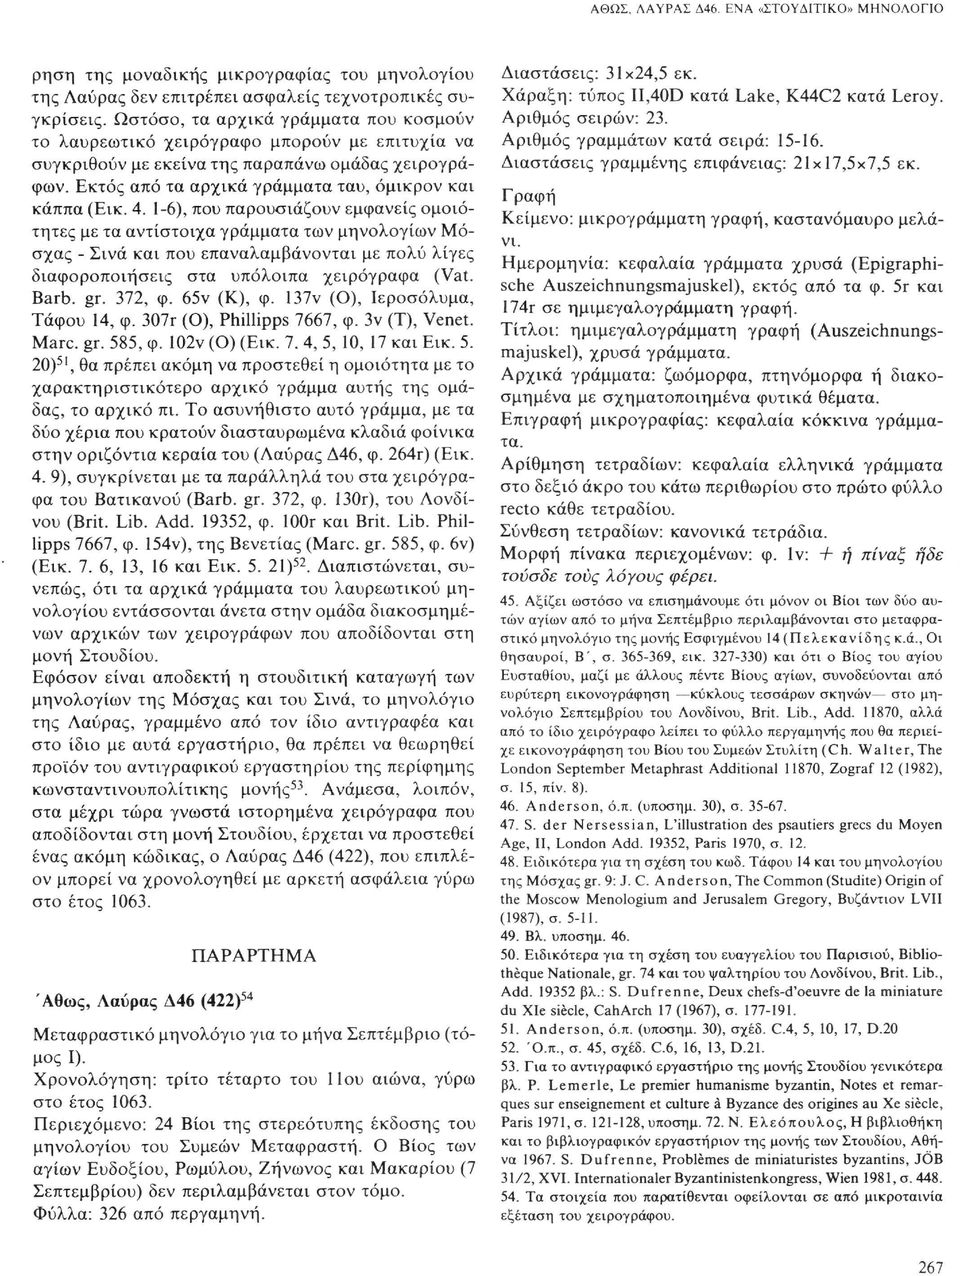 4. 1-6), που παρουσιάζουν εμφανείς ομοιότητες με τα αντίστοιχα γράμματα των μηνολογίων Μόσχας - Σινά και που επαναλαμβάνονται με πολύ λίγες διαφοροποιήσεις στα υπόλοιπα χειρόγραφα (Vat. Barb. gr.